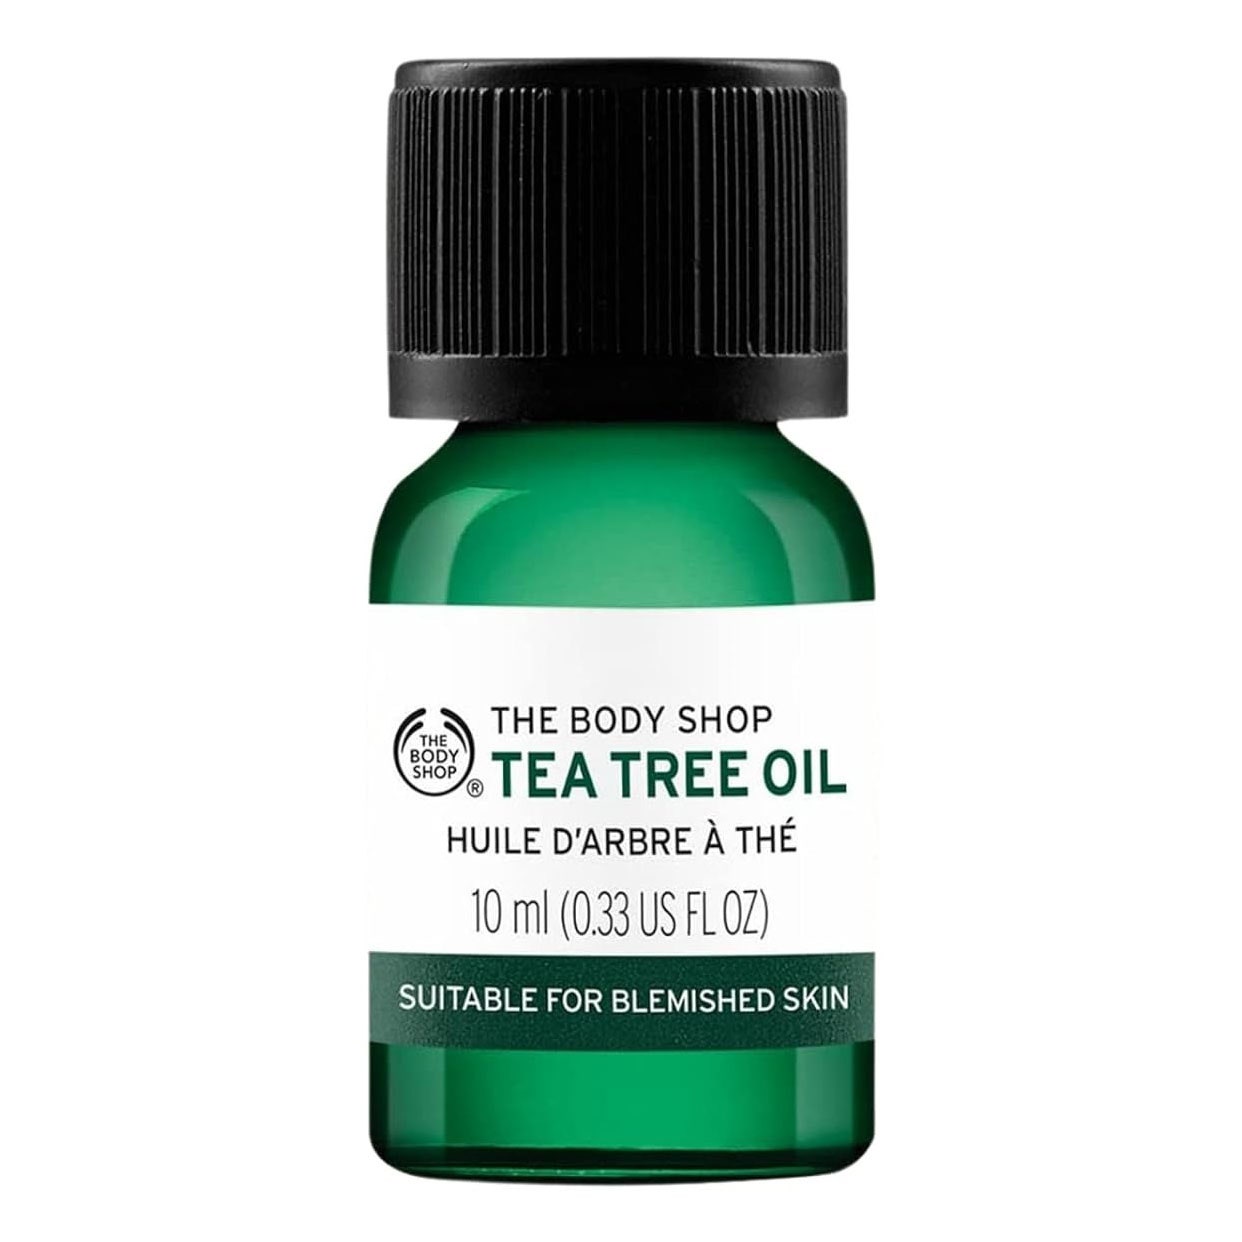 Das Body Shop Teebaumöl in grüner Glasflasche auf weißem Hintergrund